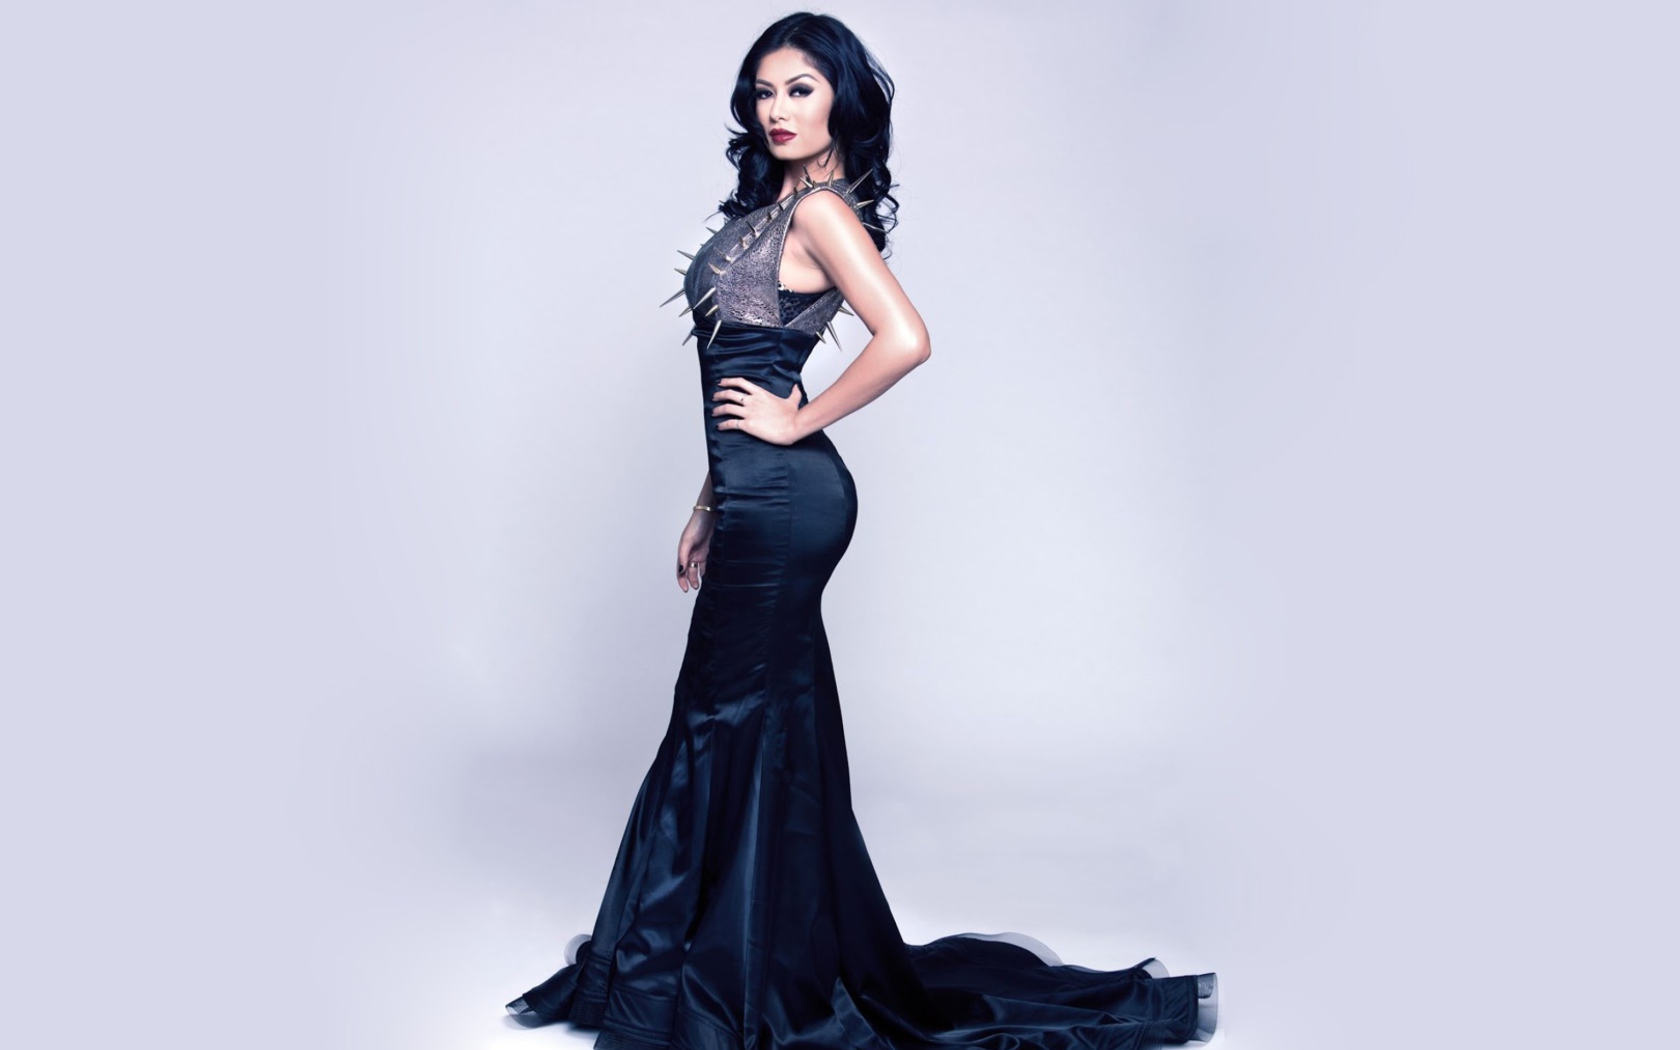 Gorgeous Kim Lee In Black Dress wallpaper 1680x1050